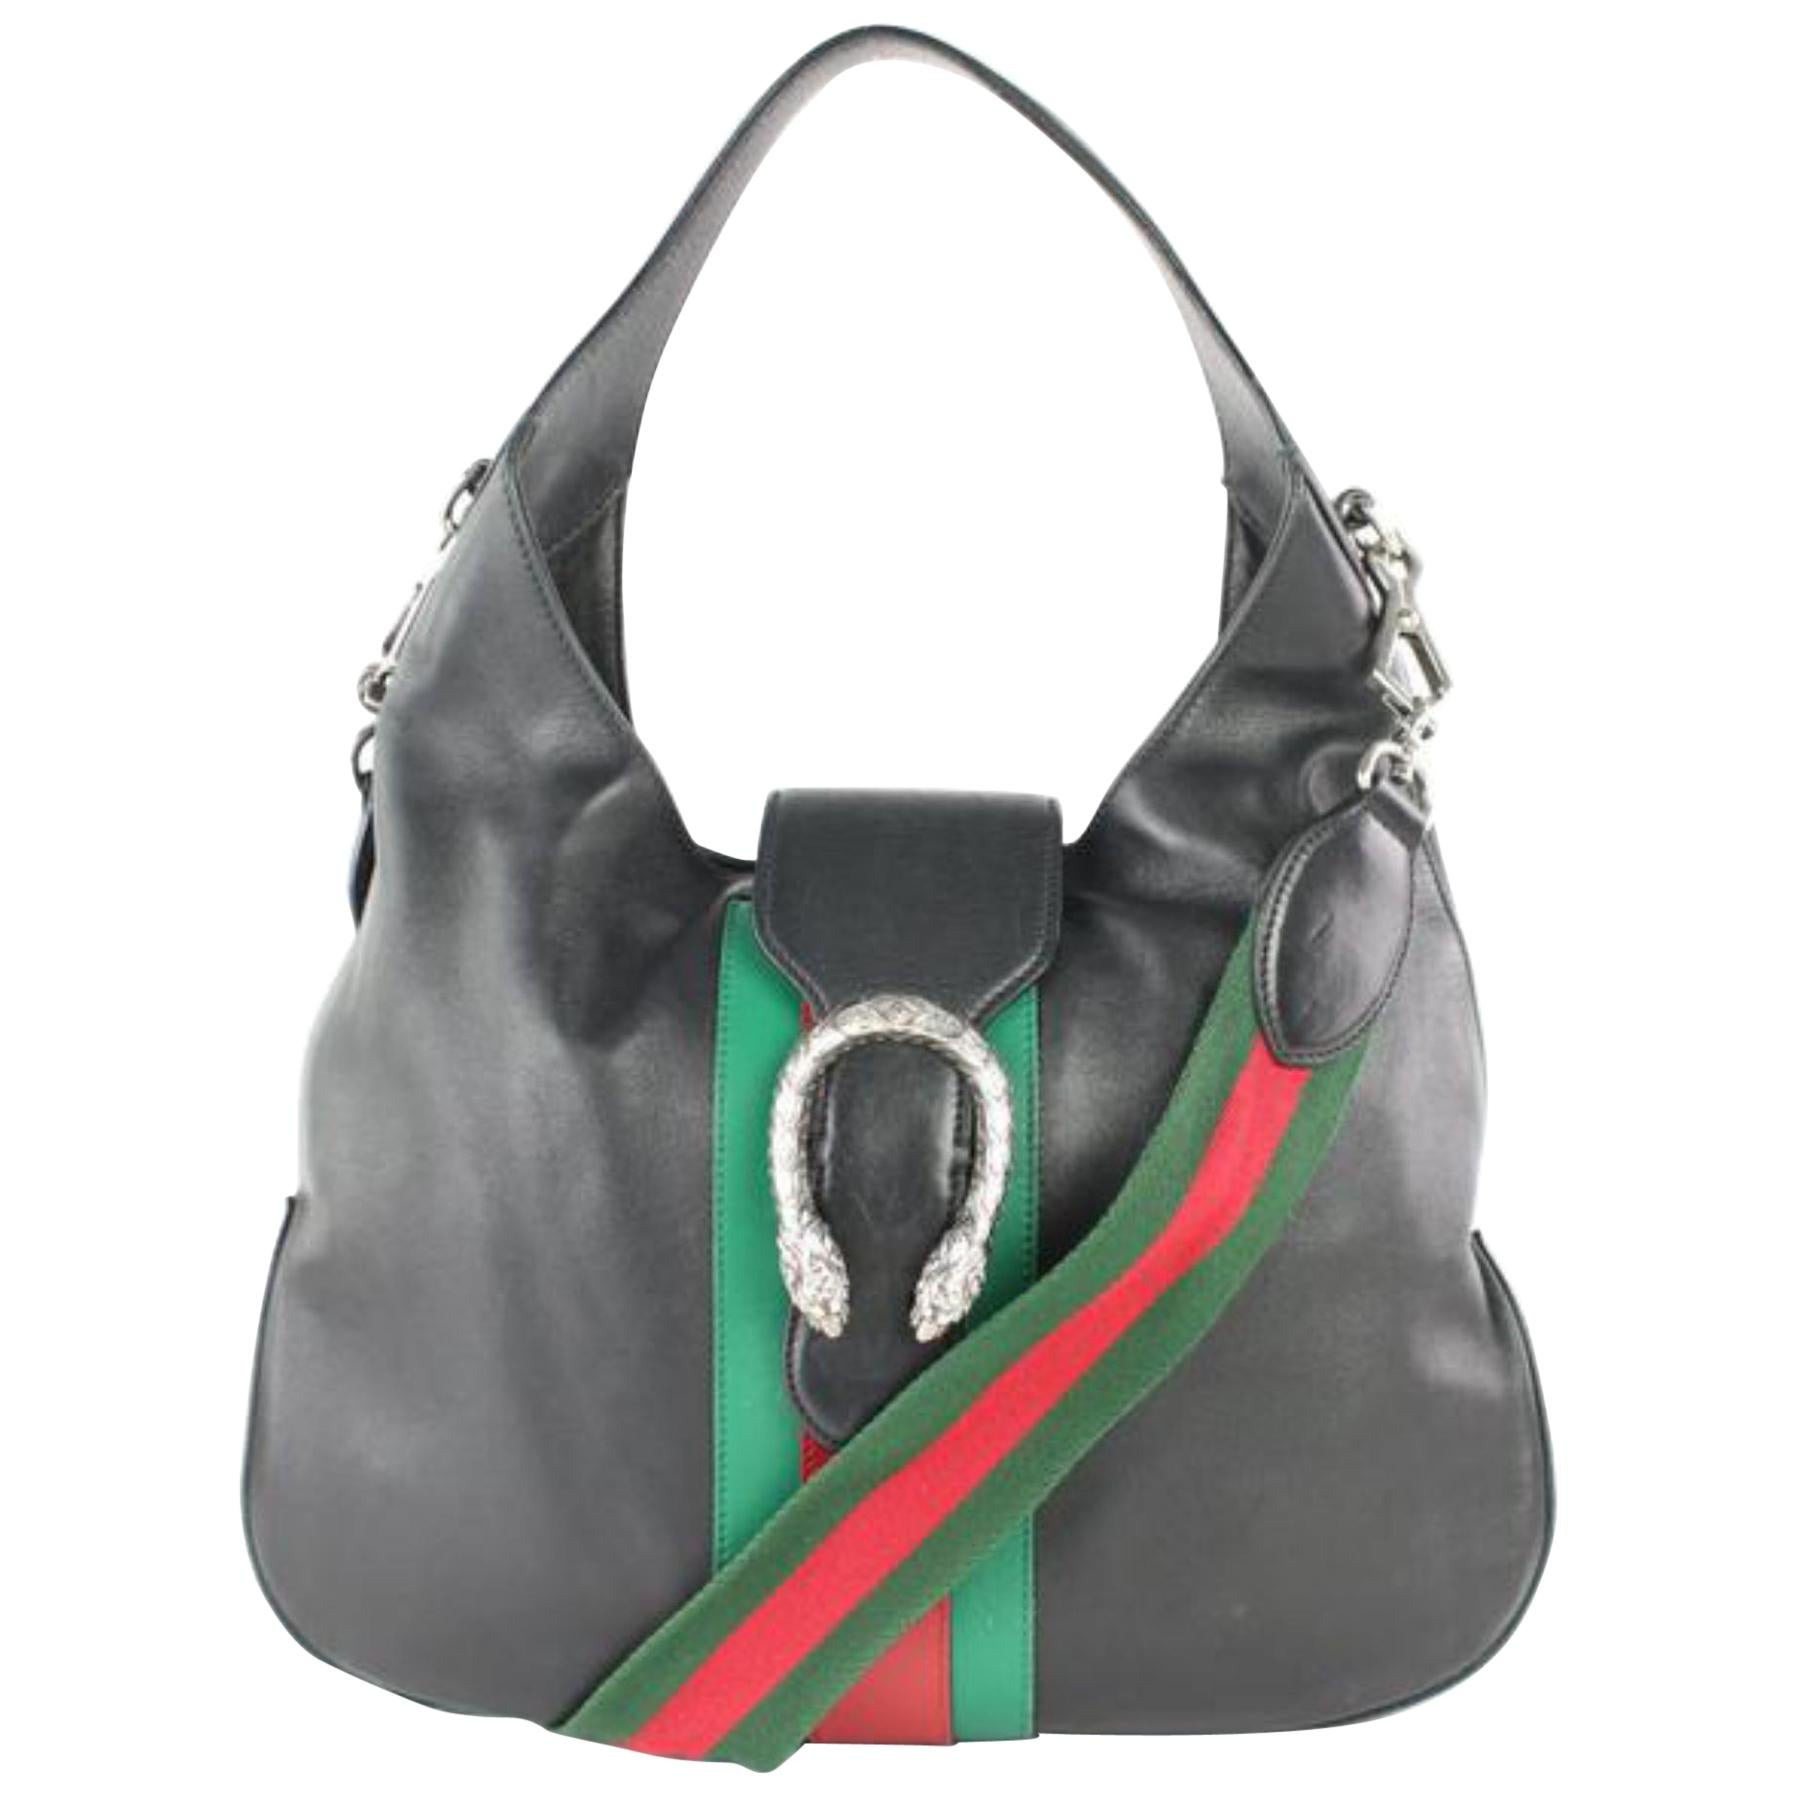 Gucci Dionysus Web 2way Hobo 8gj0111 Black Leather Shoulder Bag For Sale